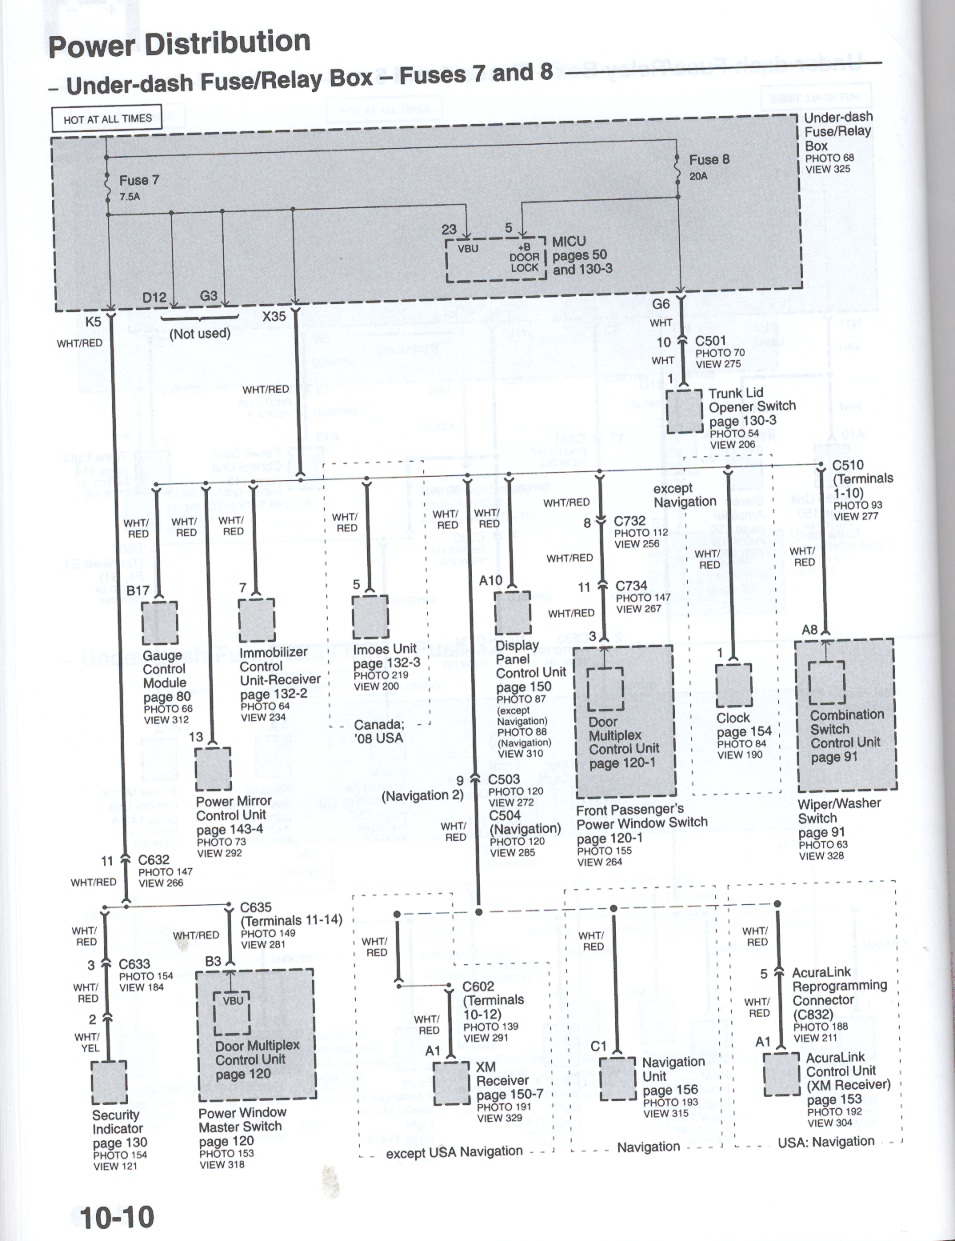 roger vivi ersaks: 2008 Acura Tl Wiring Diagram